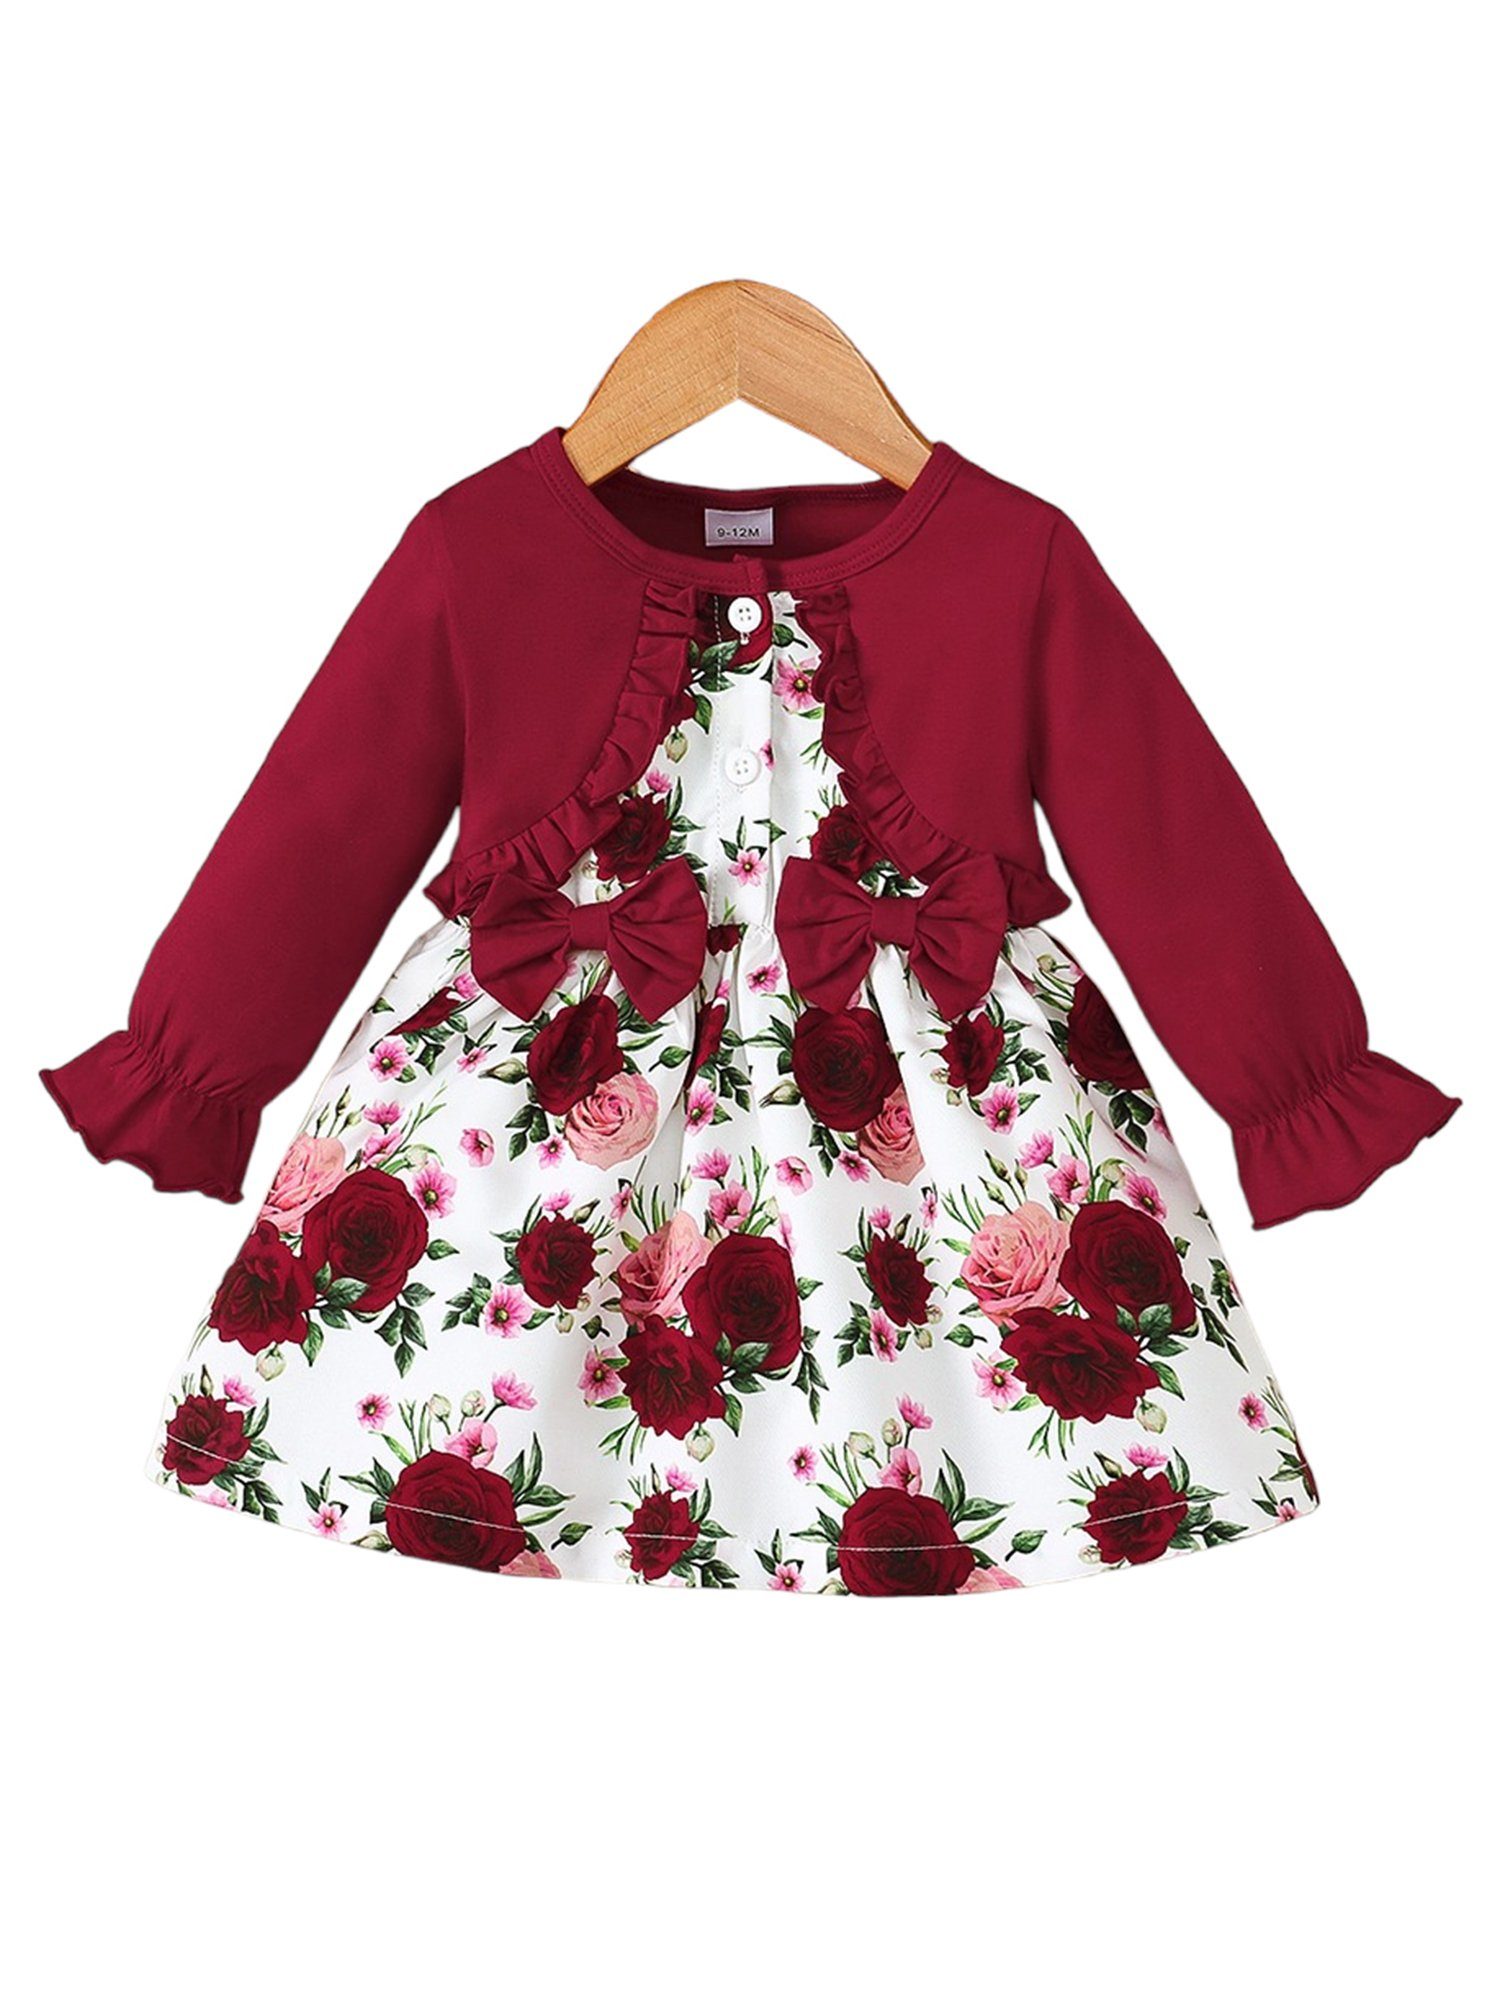 LAPA Druckkleid Mädchen Langärmliges Kleid mit Blumendruck und Rüschen, 1 Stück A-Linien-Kleid mit Laternenärmeln, Partykleid